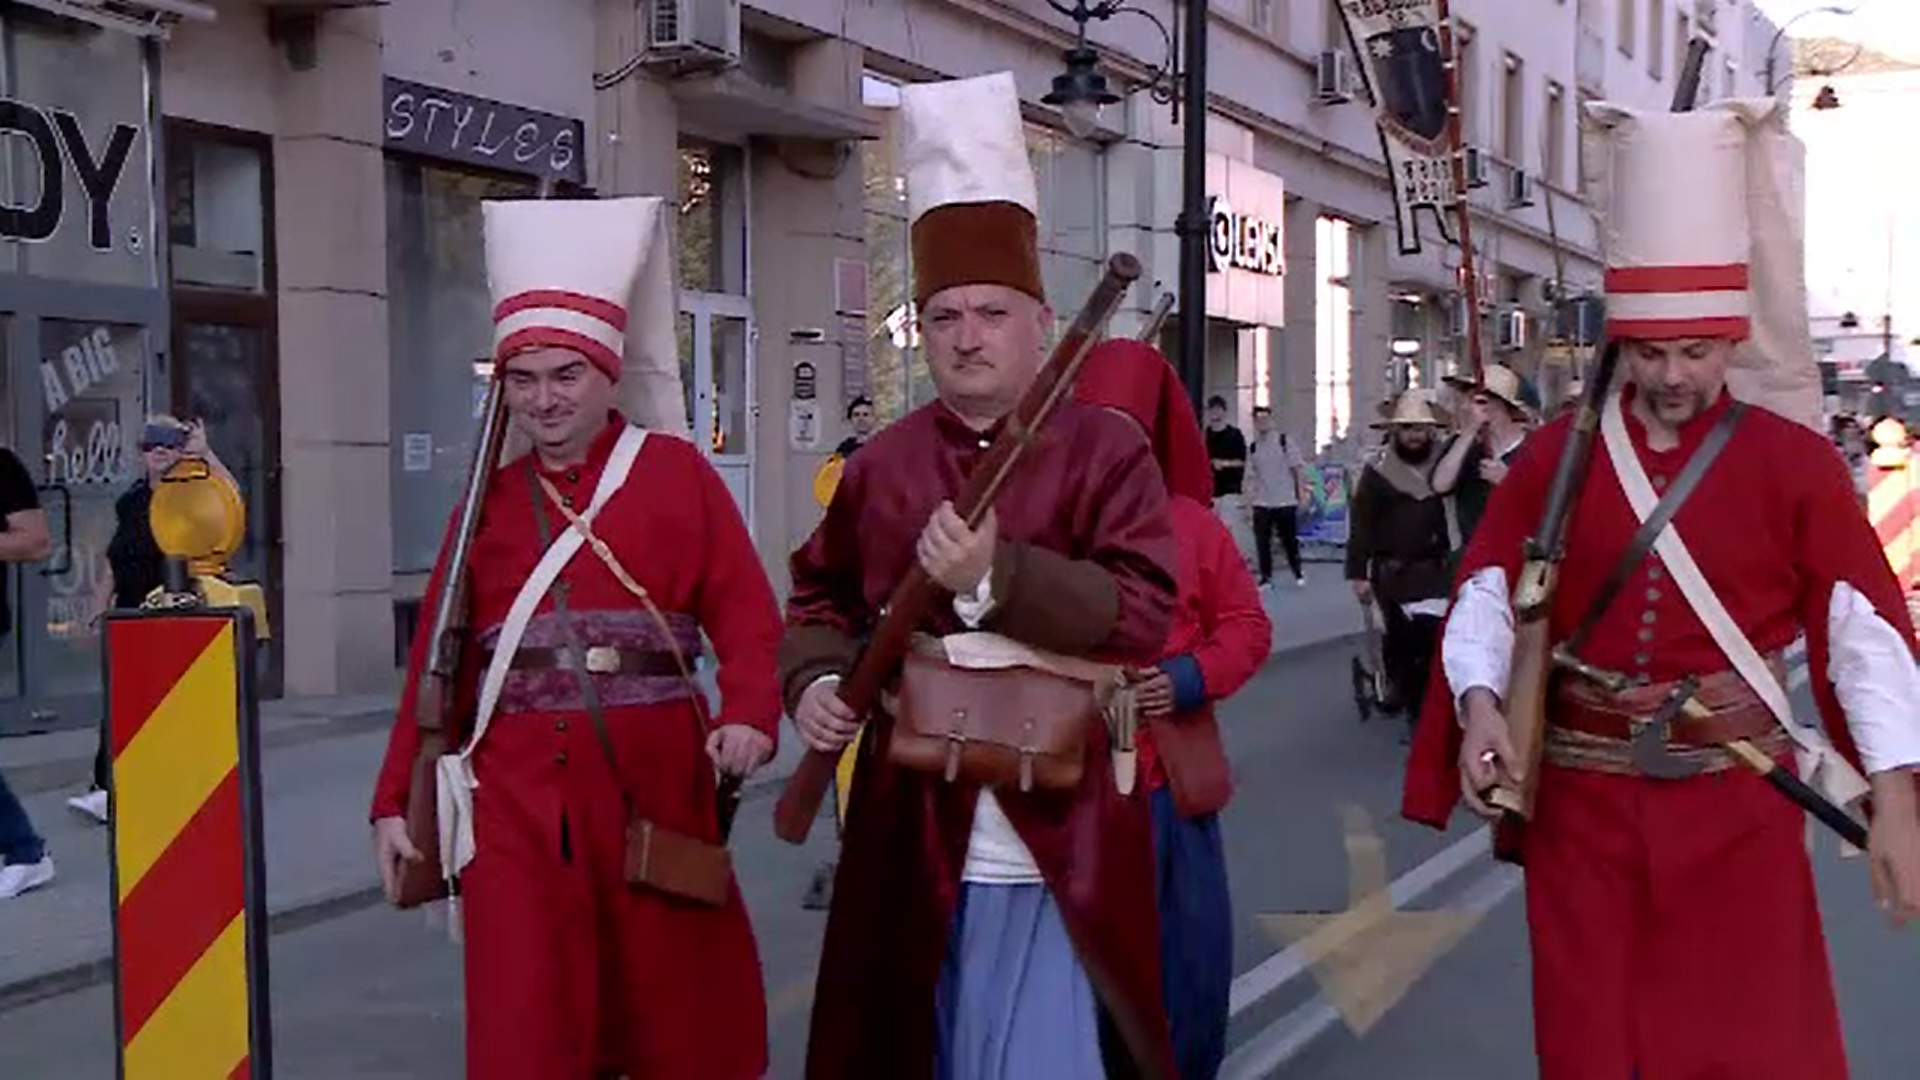 Târg medieval pe străzile din Craiova. Peste 100 de cavaleri, domnițe şi războinici au dat culoare orașului